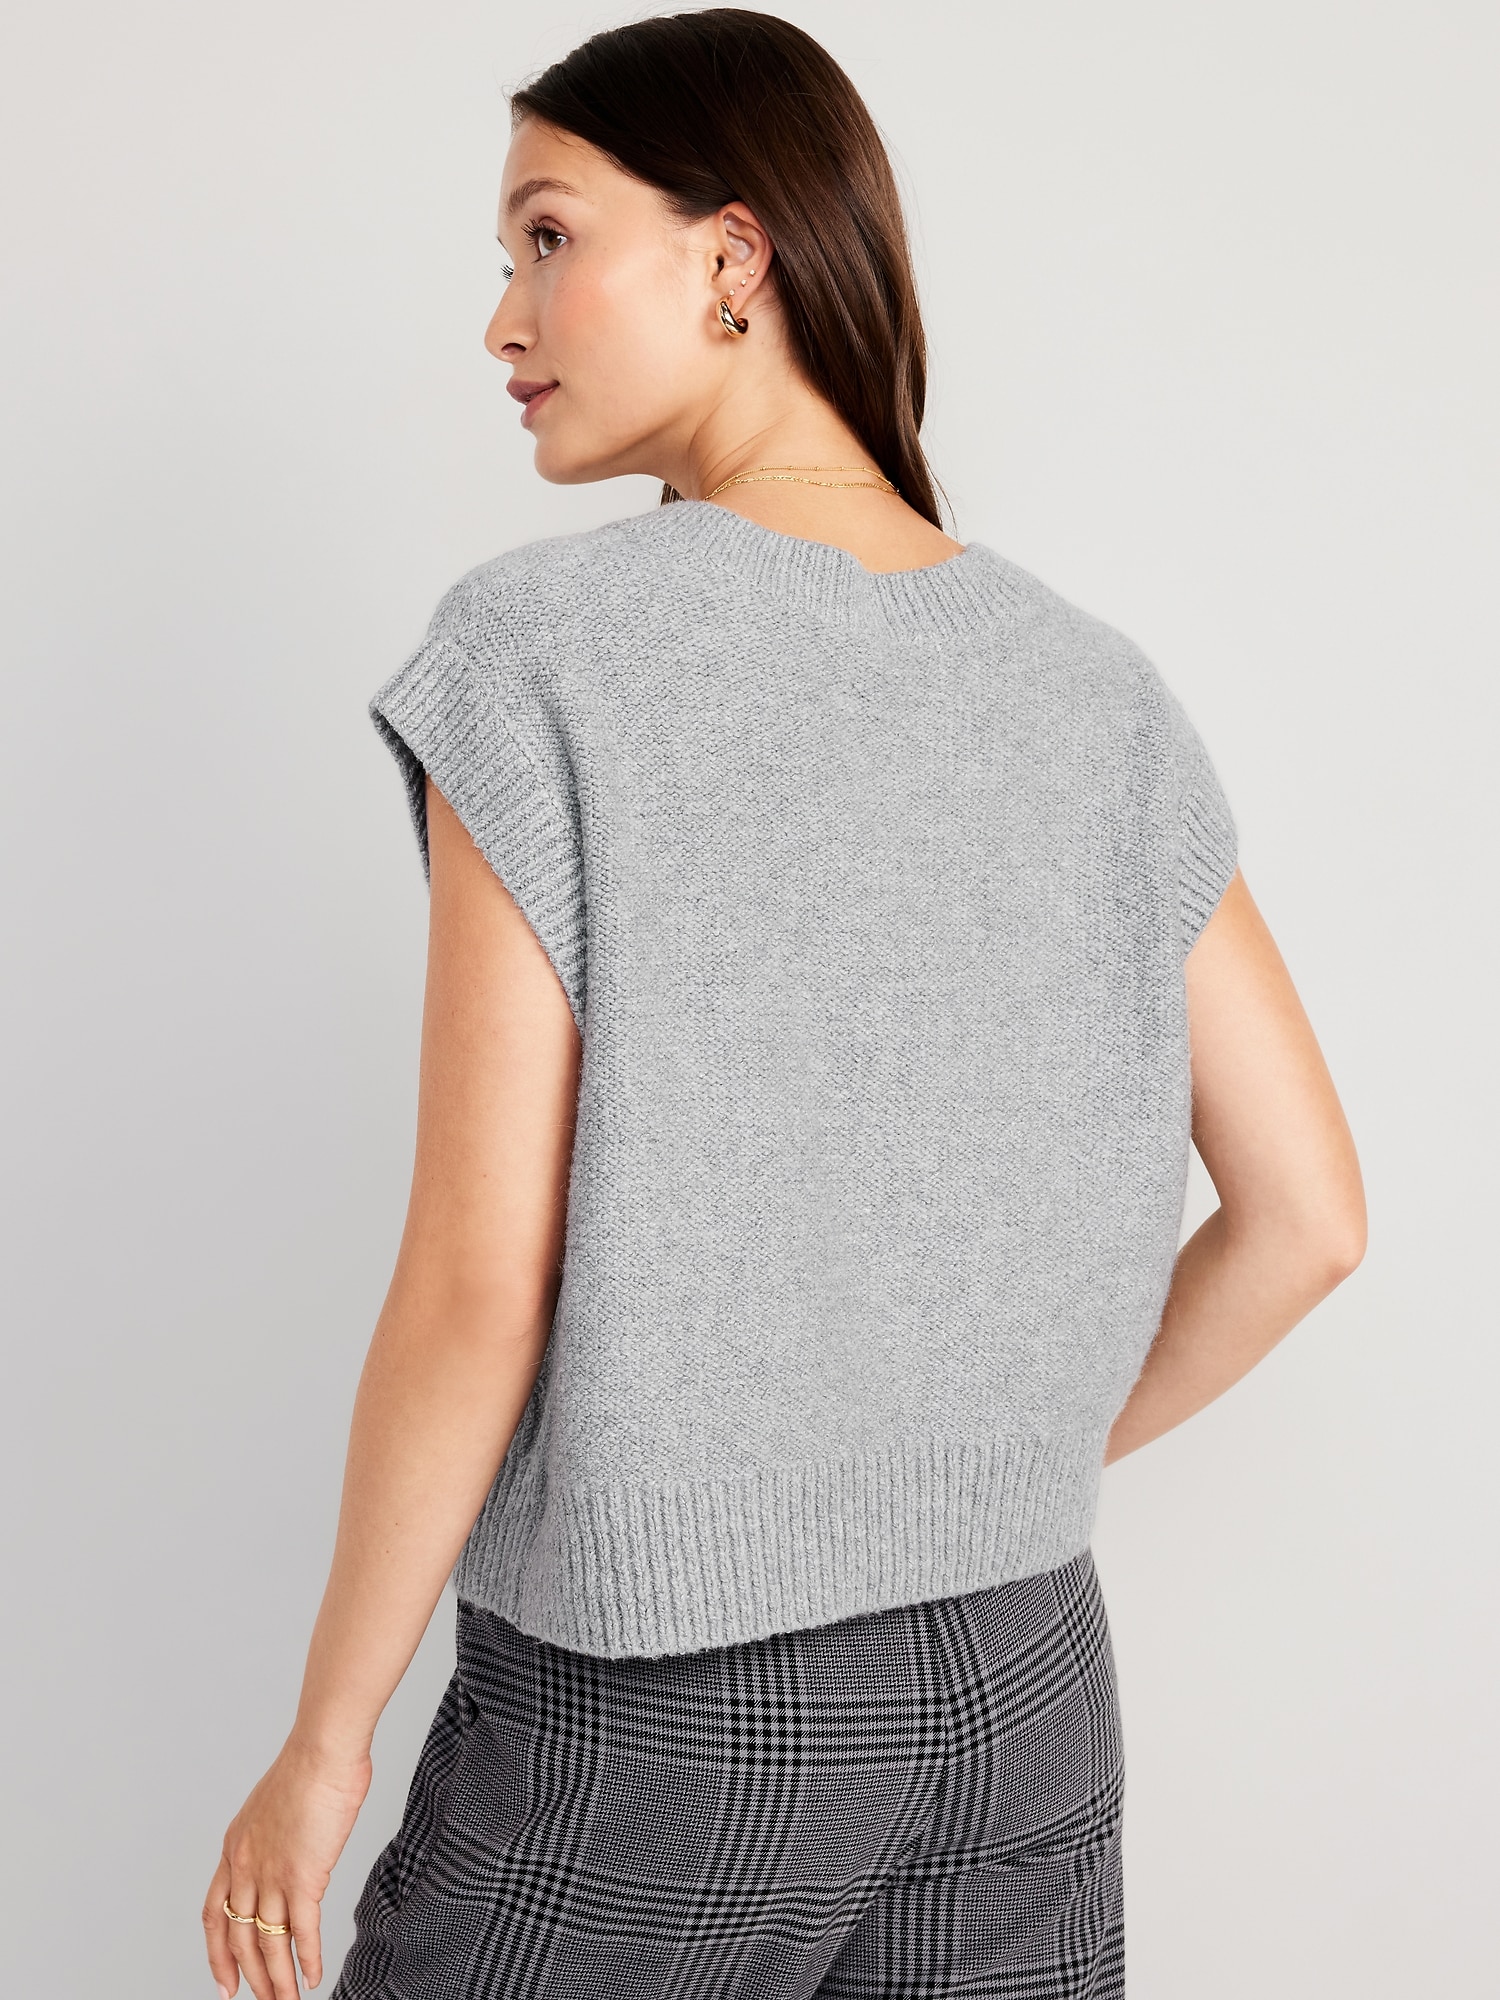 V-Neck Sweater Vest for Women | Old Navy